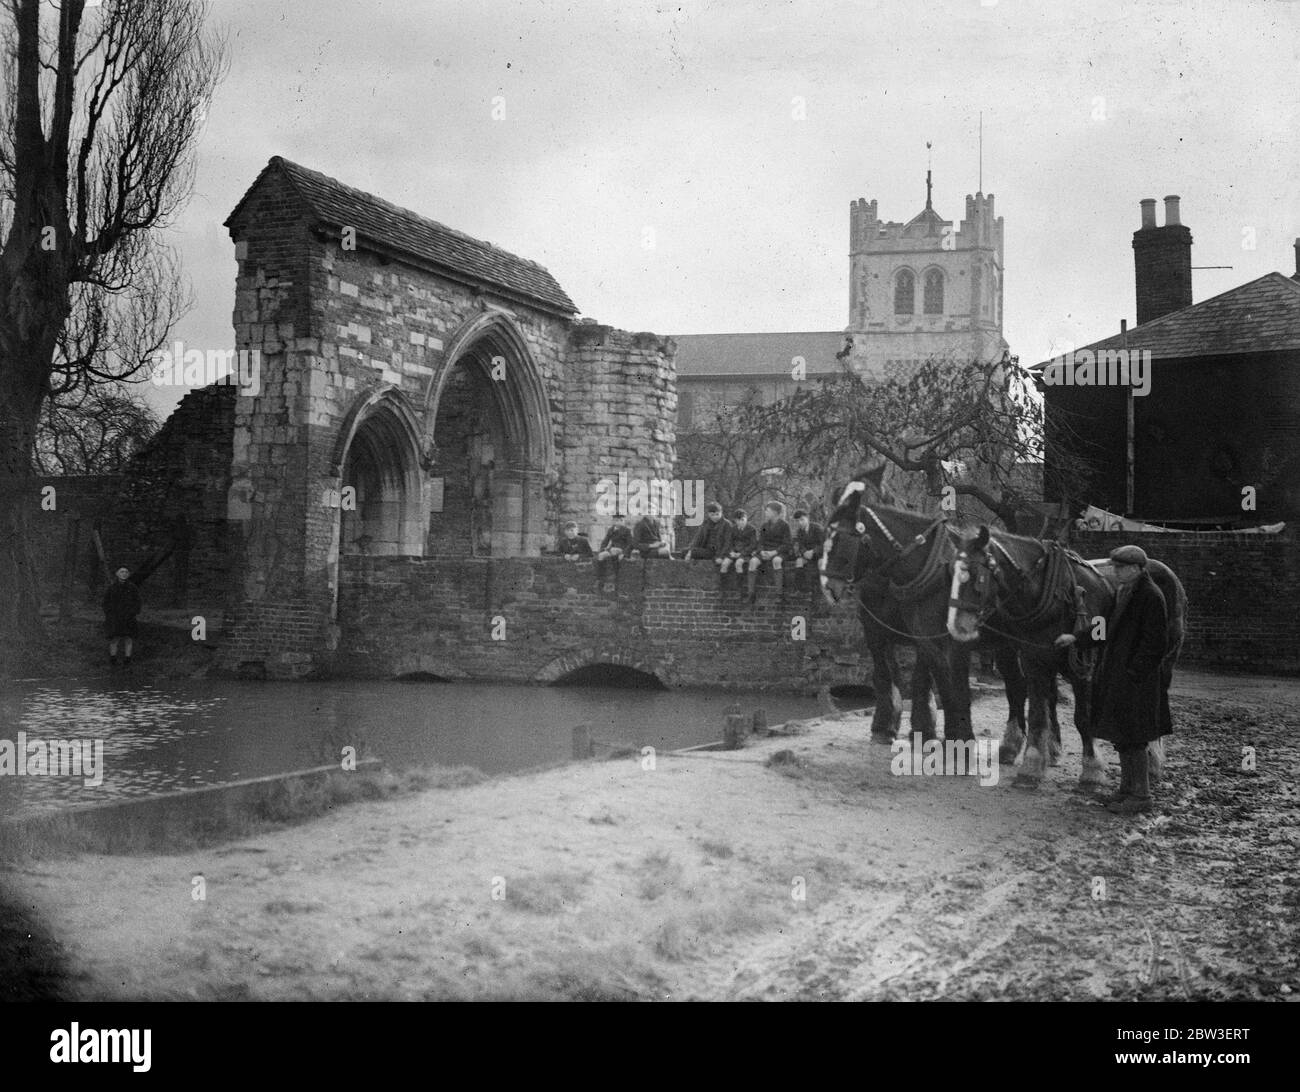 Remanente de un pasado glorioso. Un equipo de caballos de granja por la antigua puerta de entrada a la Abadía de Waltham y la iglesia de la Abadía , que tiene 875 años de edad. 15 de enero de 1935 Foto de stock